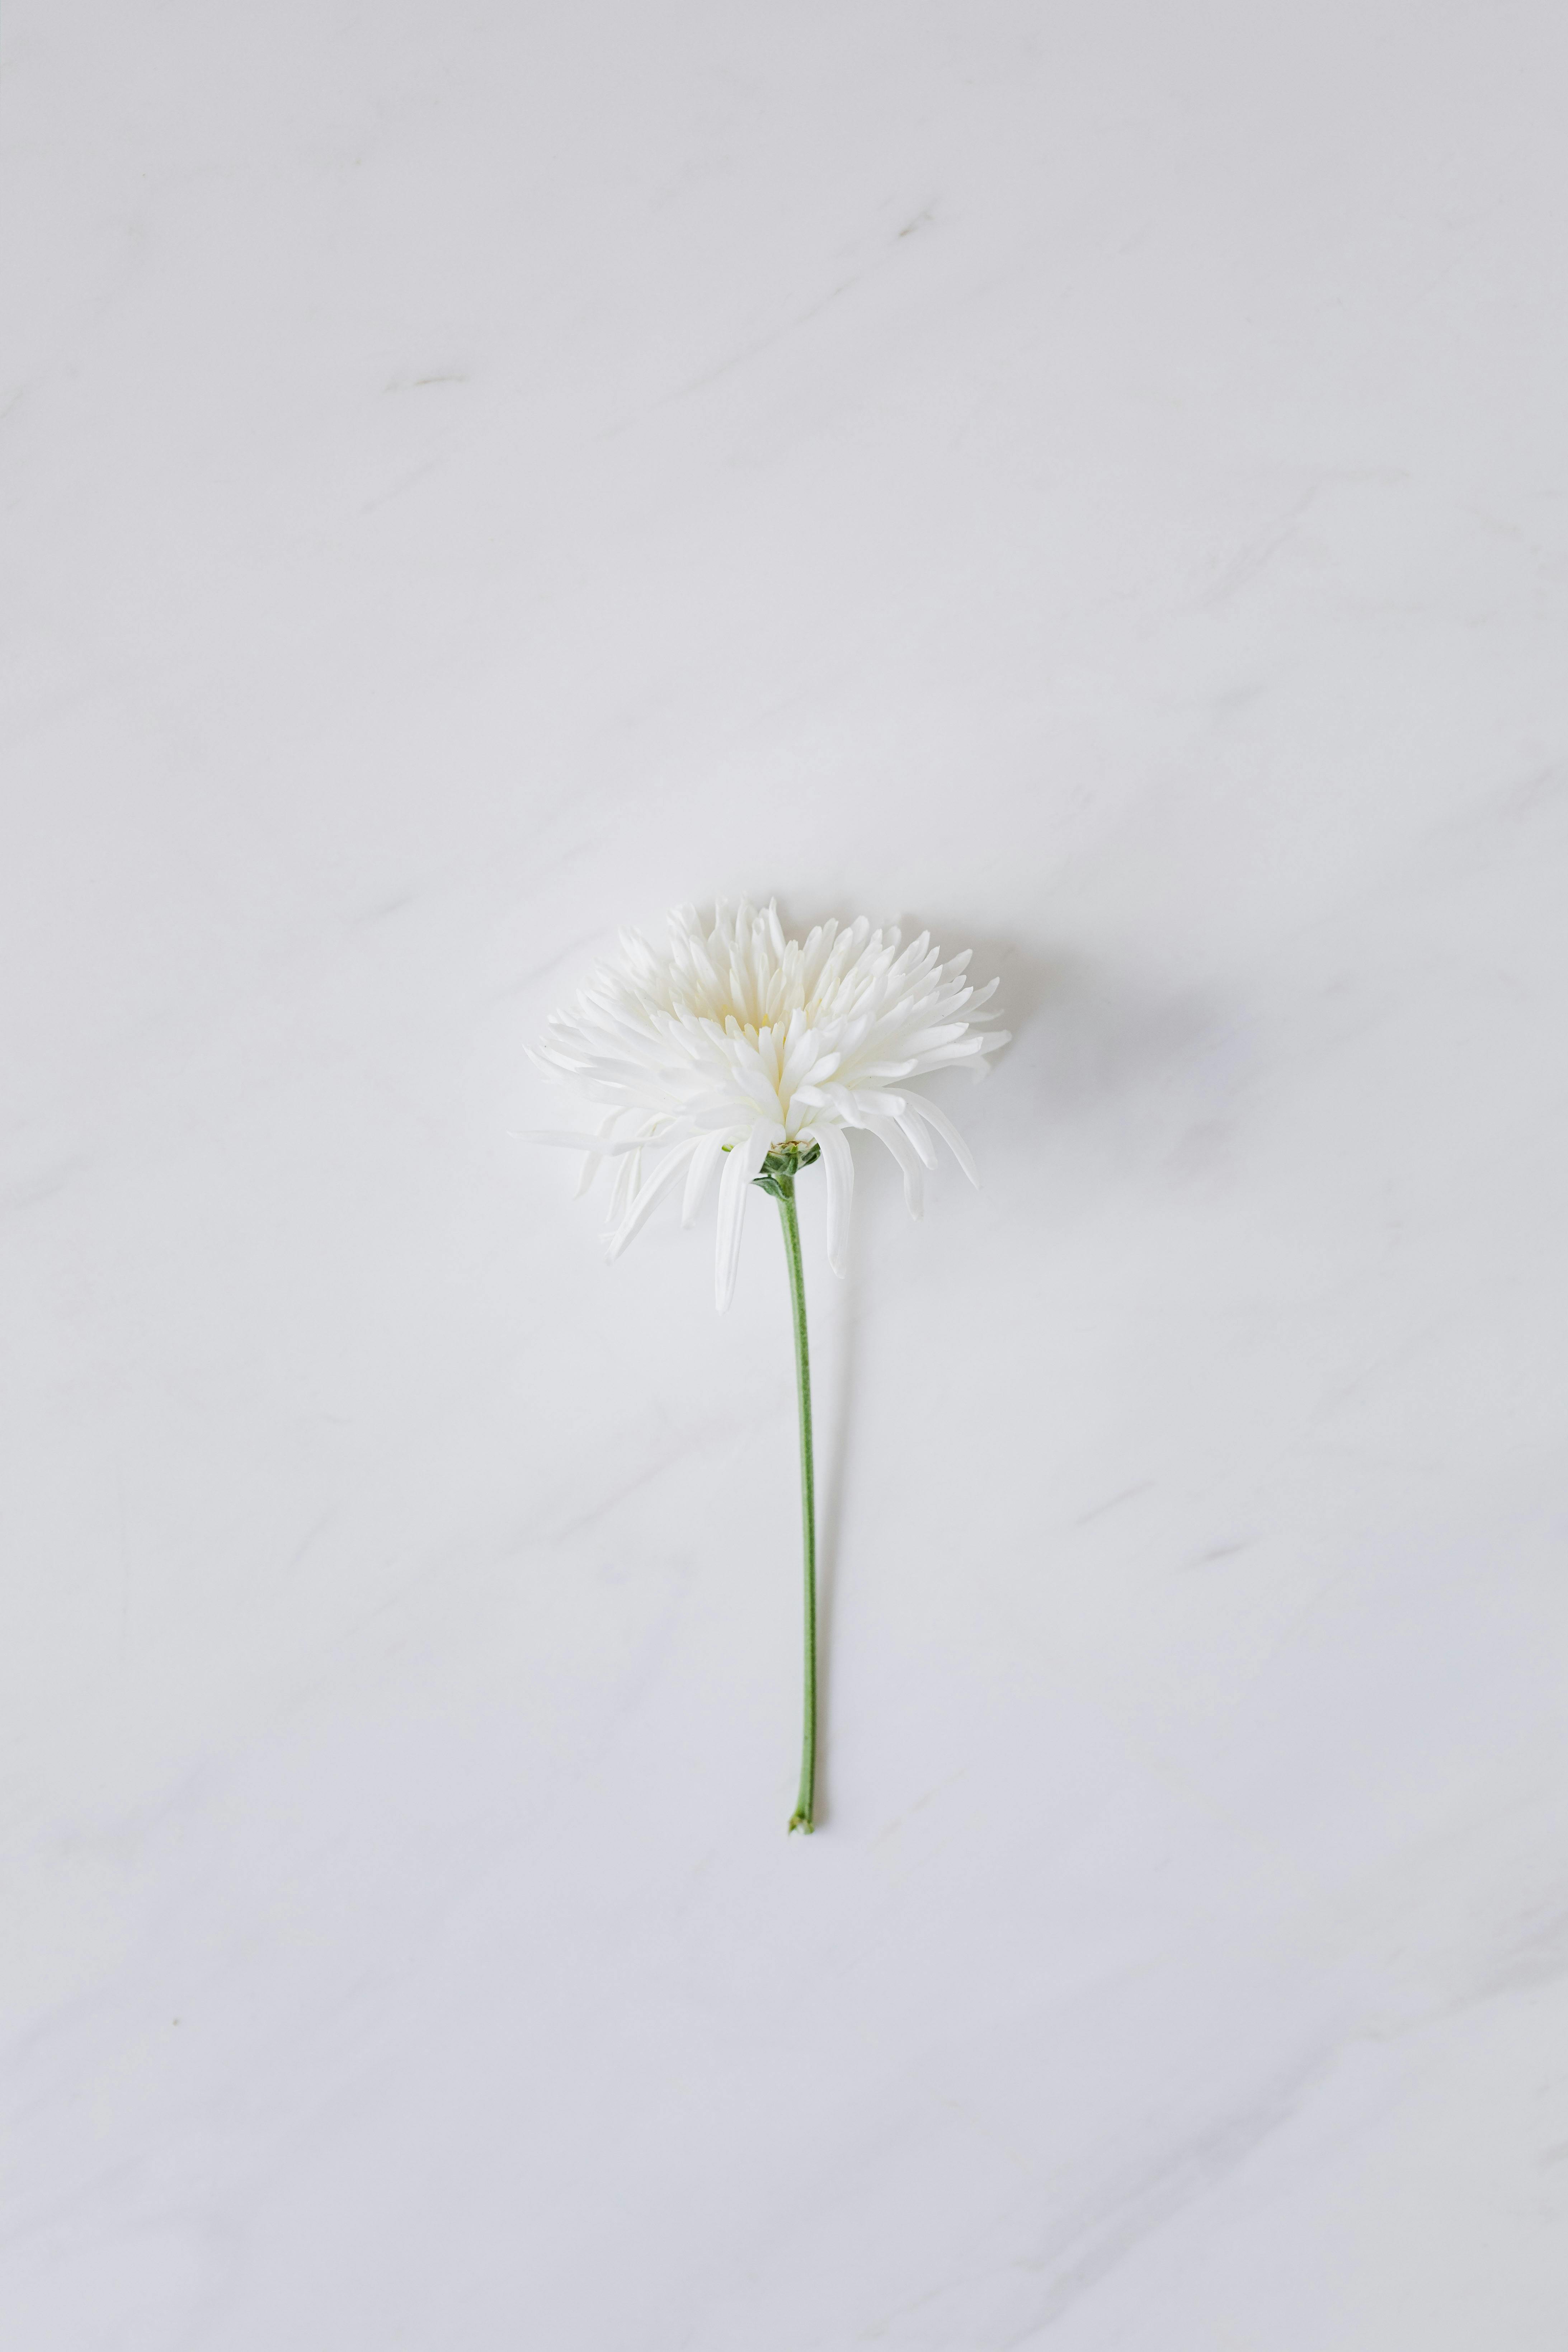 Hoa trắng trên nền trắng: Hãy ngắm nhìn bức ảnh đẹp như một tác phẩm nghệ thuật - hoa trắng tinh khôi được đặt trên nền trắng tinh khiết. Hình ảnh đơn giản nhưng rất thu hút và đầy ấn tượng, chắc chắn sẽ khiến bạn lưu giữ ngay sau khi nhìn thấy.